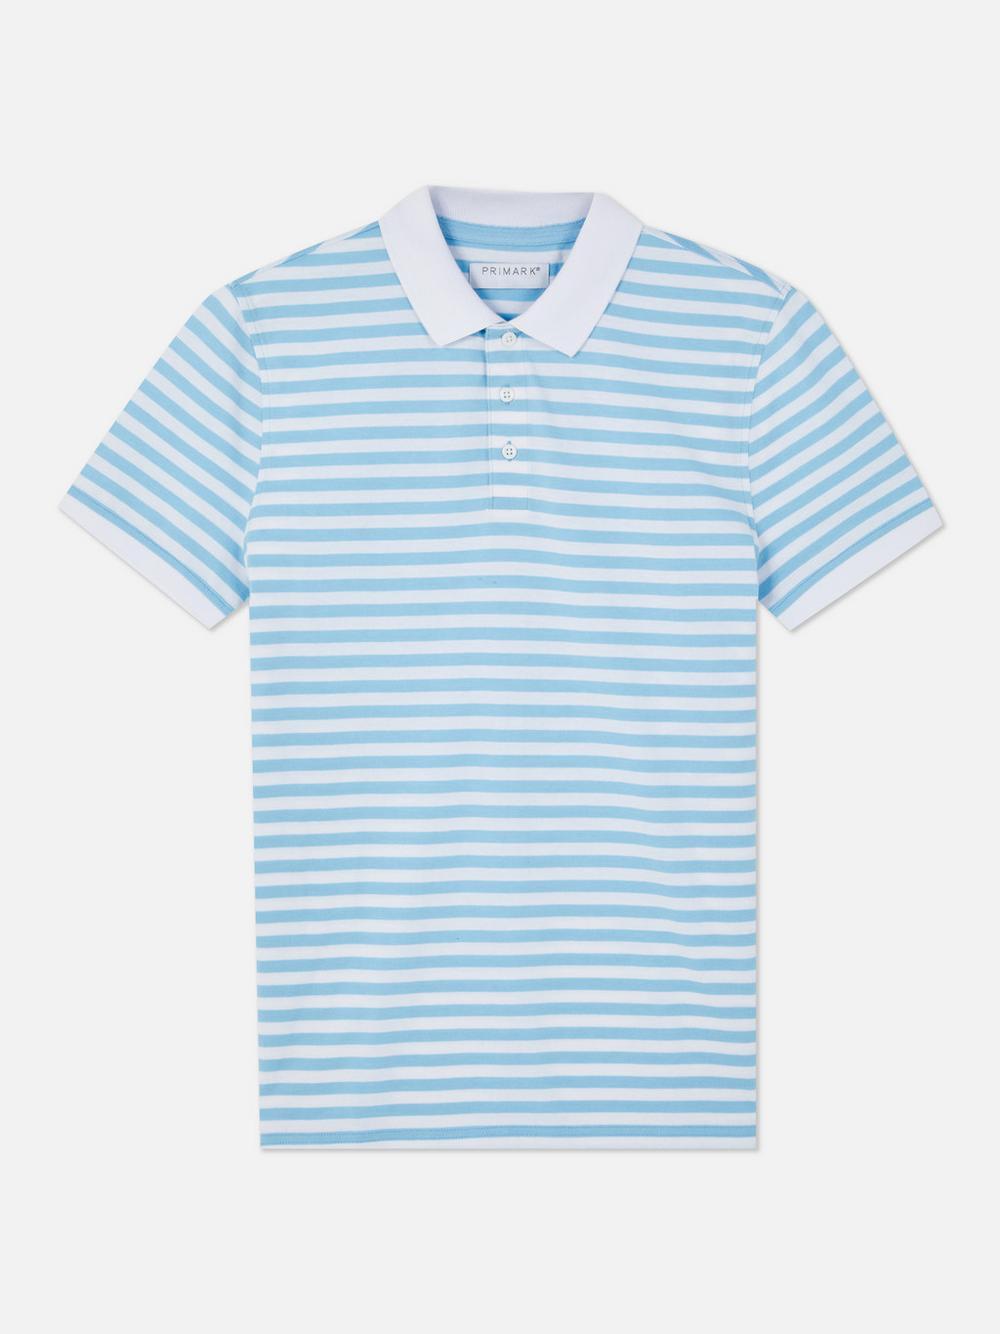 Men's blue stripe polo shirt